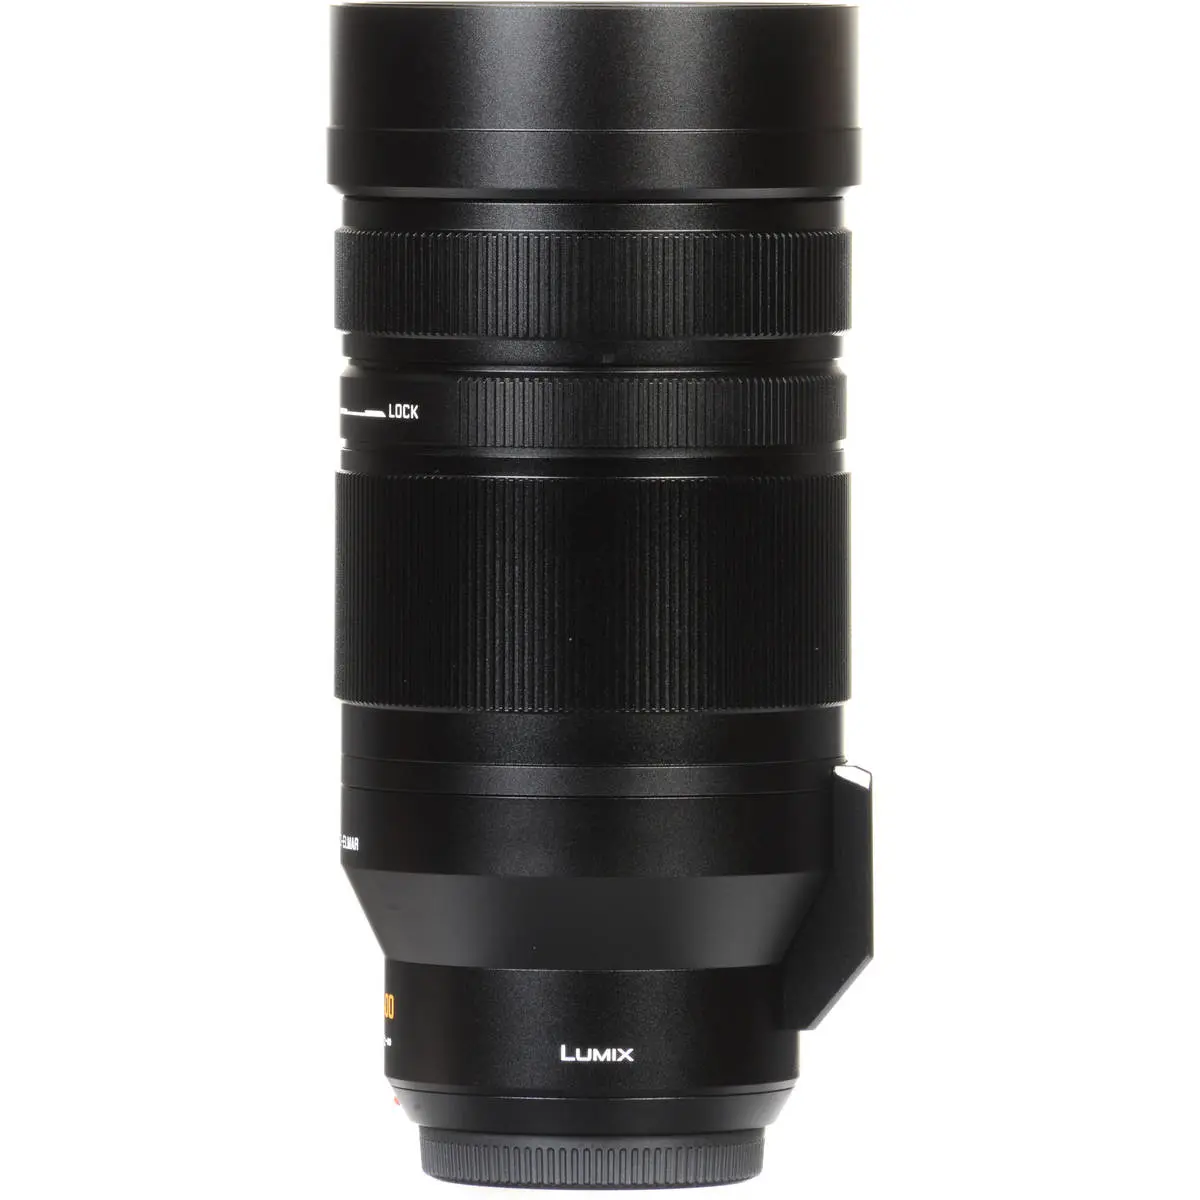 7. Panasonic DG V-Elmar 100-400mm F4.0-6.3 ASPH OIS Lens